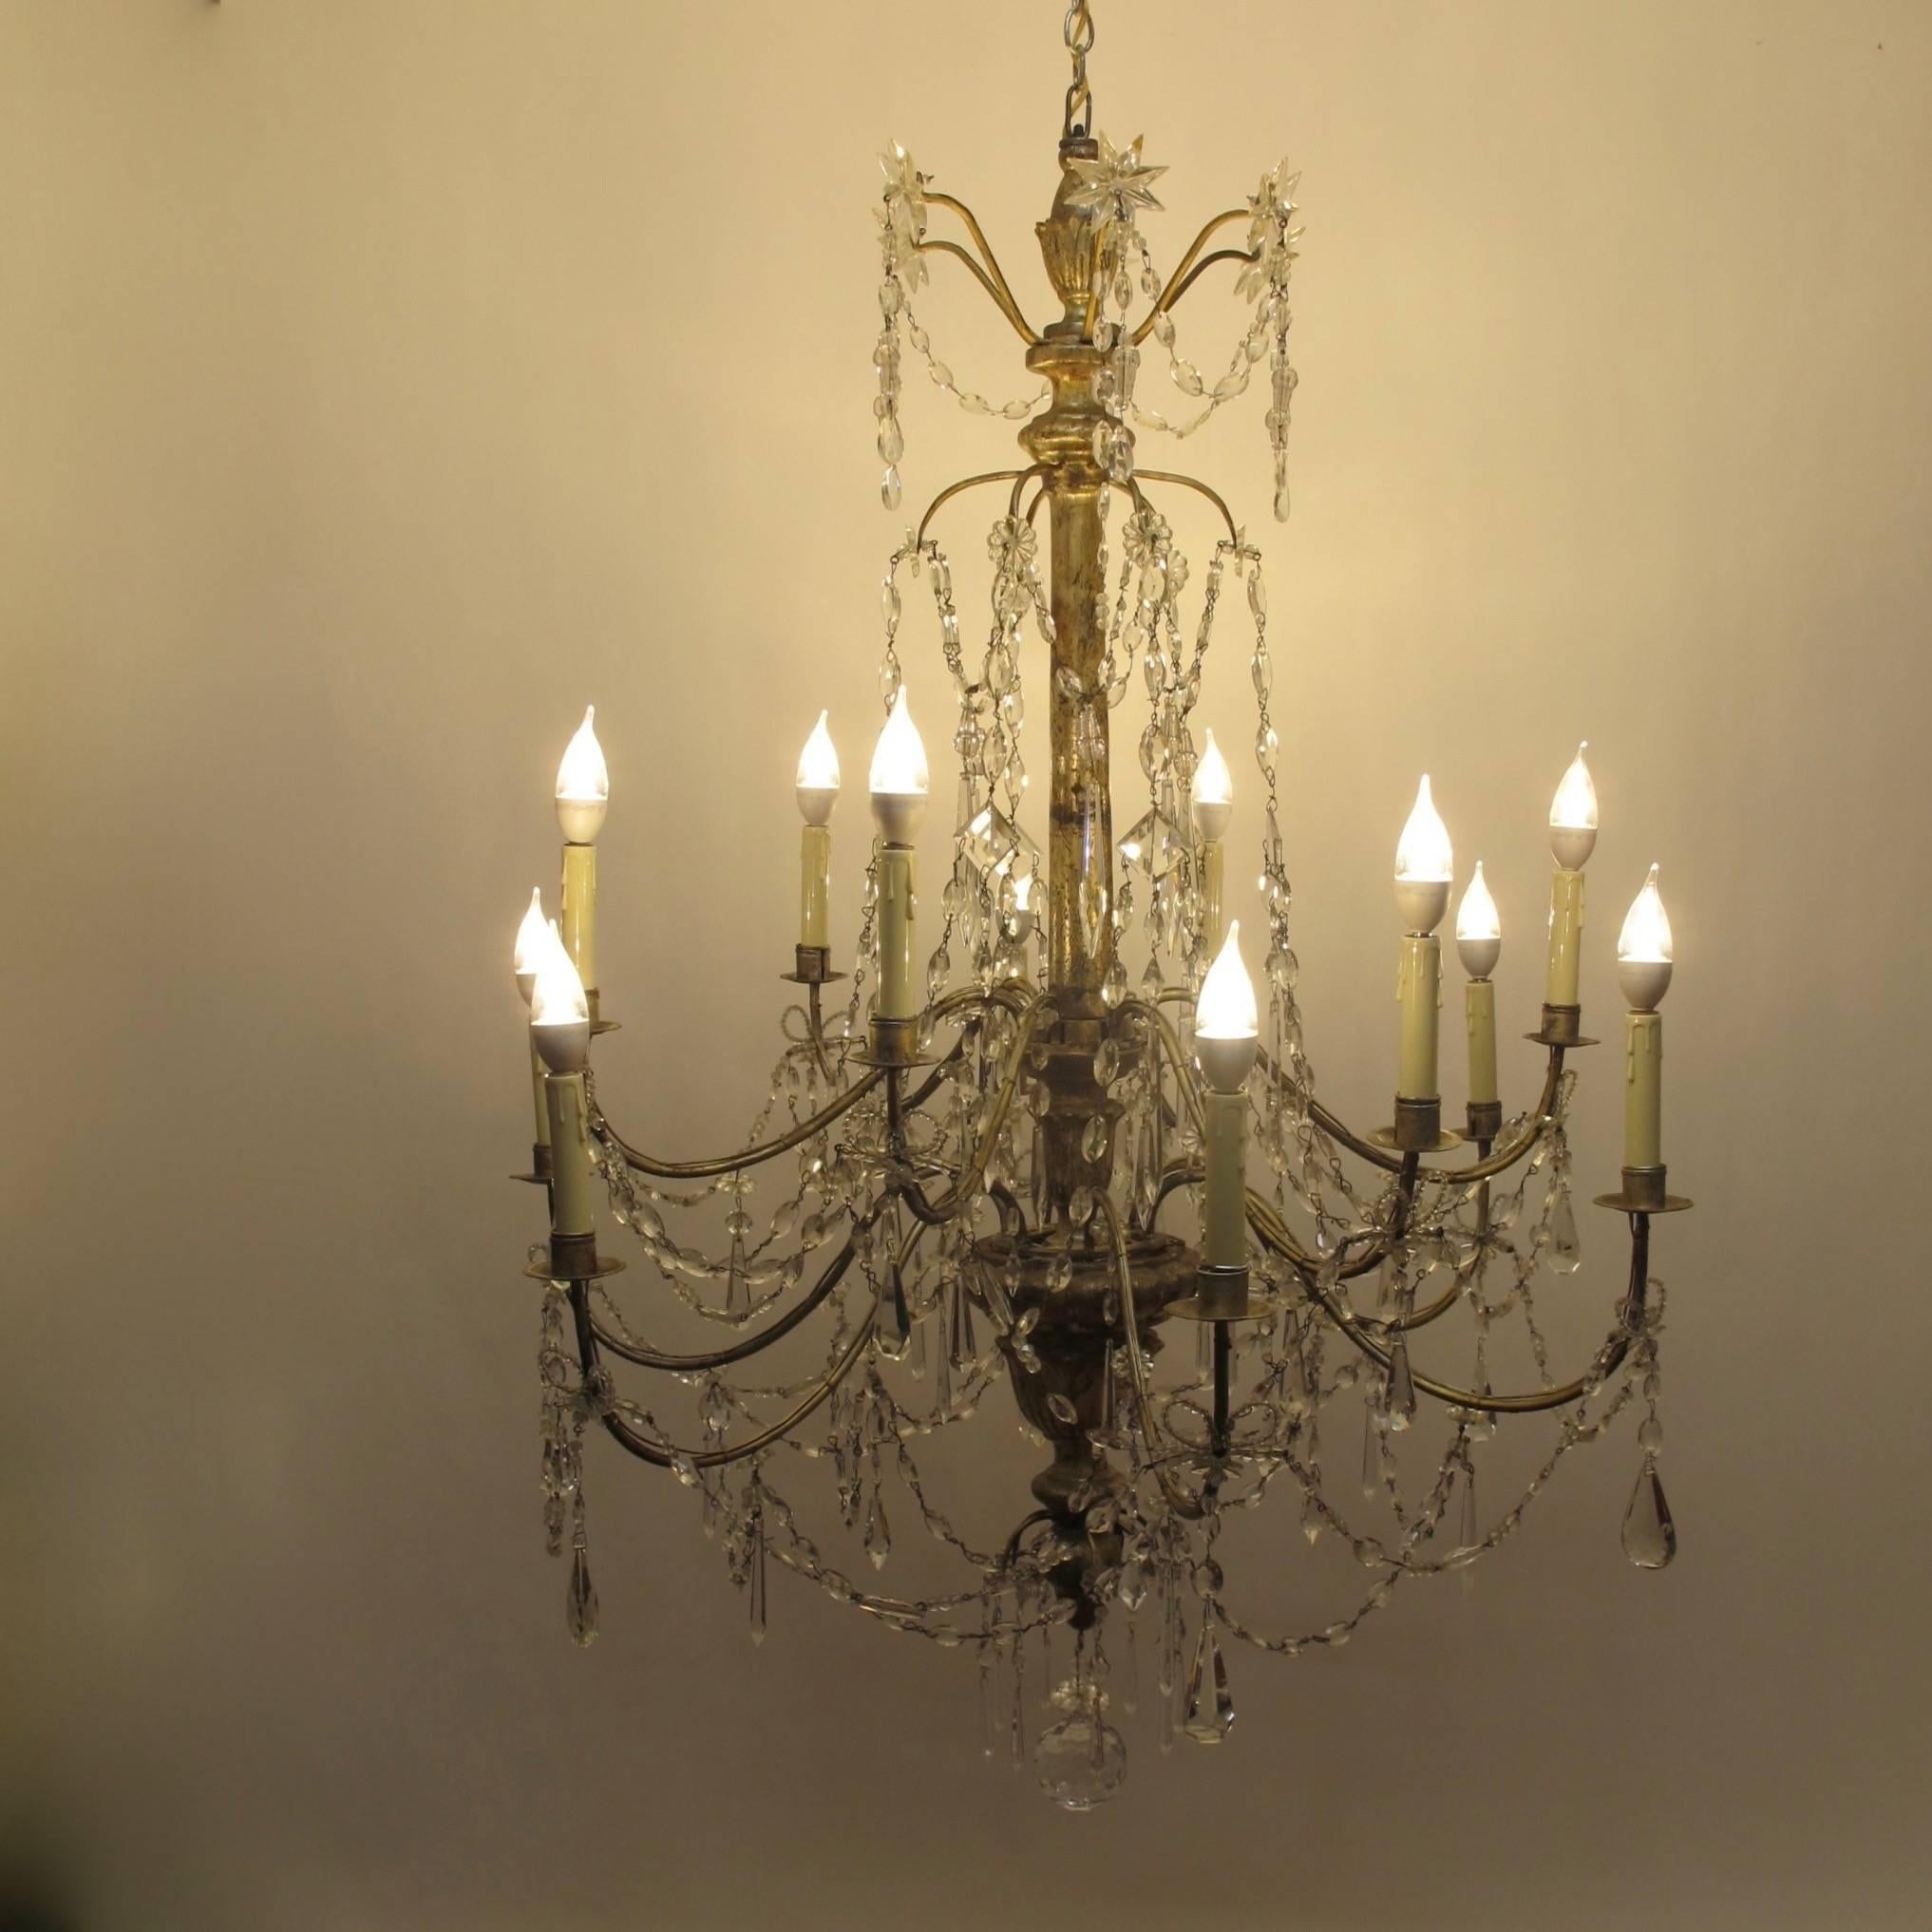 Ein außergewöhnlicher italienischer zwölfarmiger Kerzenleuchter aus dem 18. oder frühen 19. Silbervergoldeter Holz- und Eisenrahmen mit Kristallanhängern und Glasfahnen.
Kürzlich renoviert und elektrifiziert.